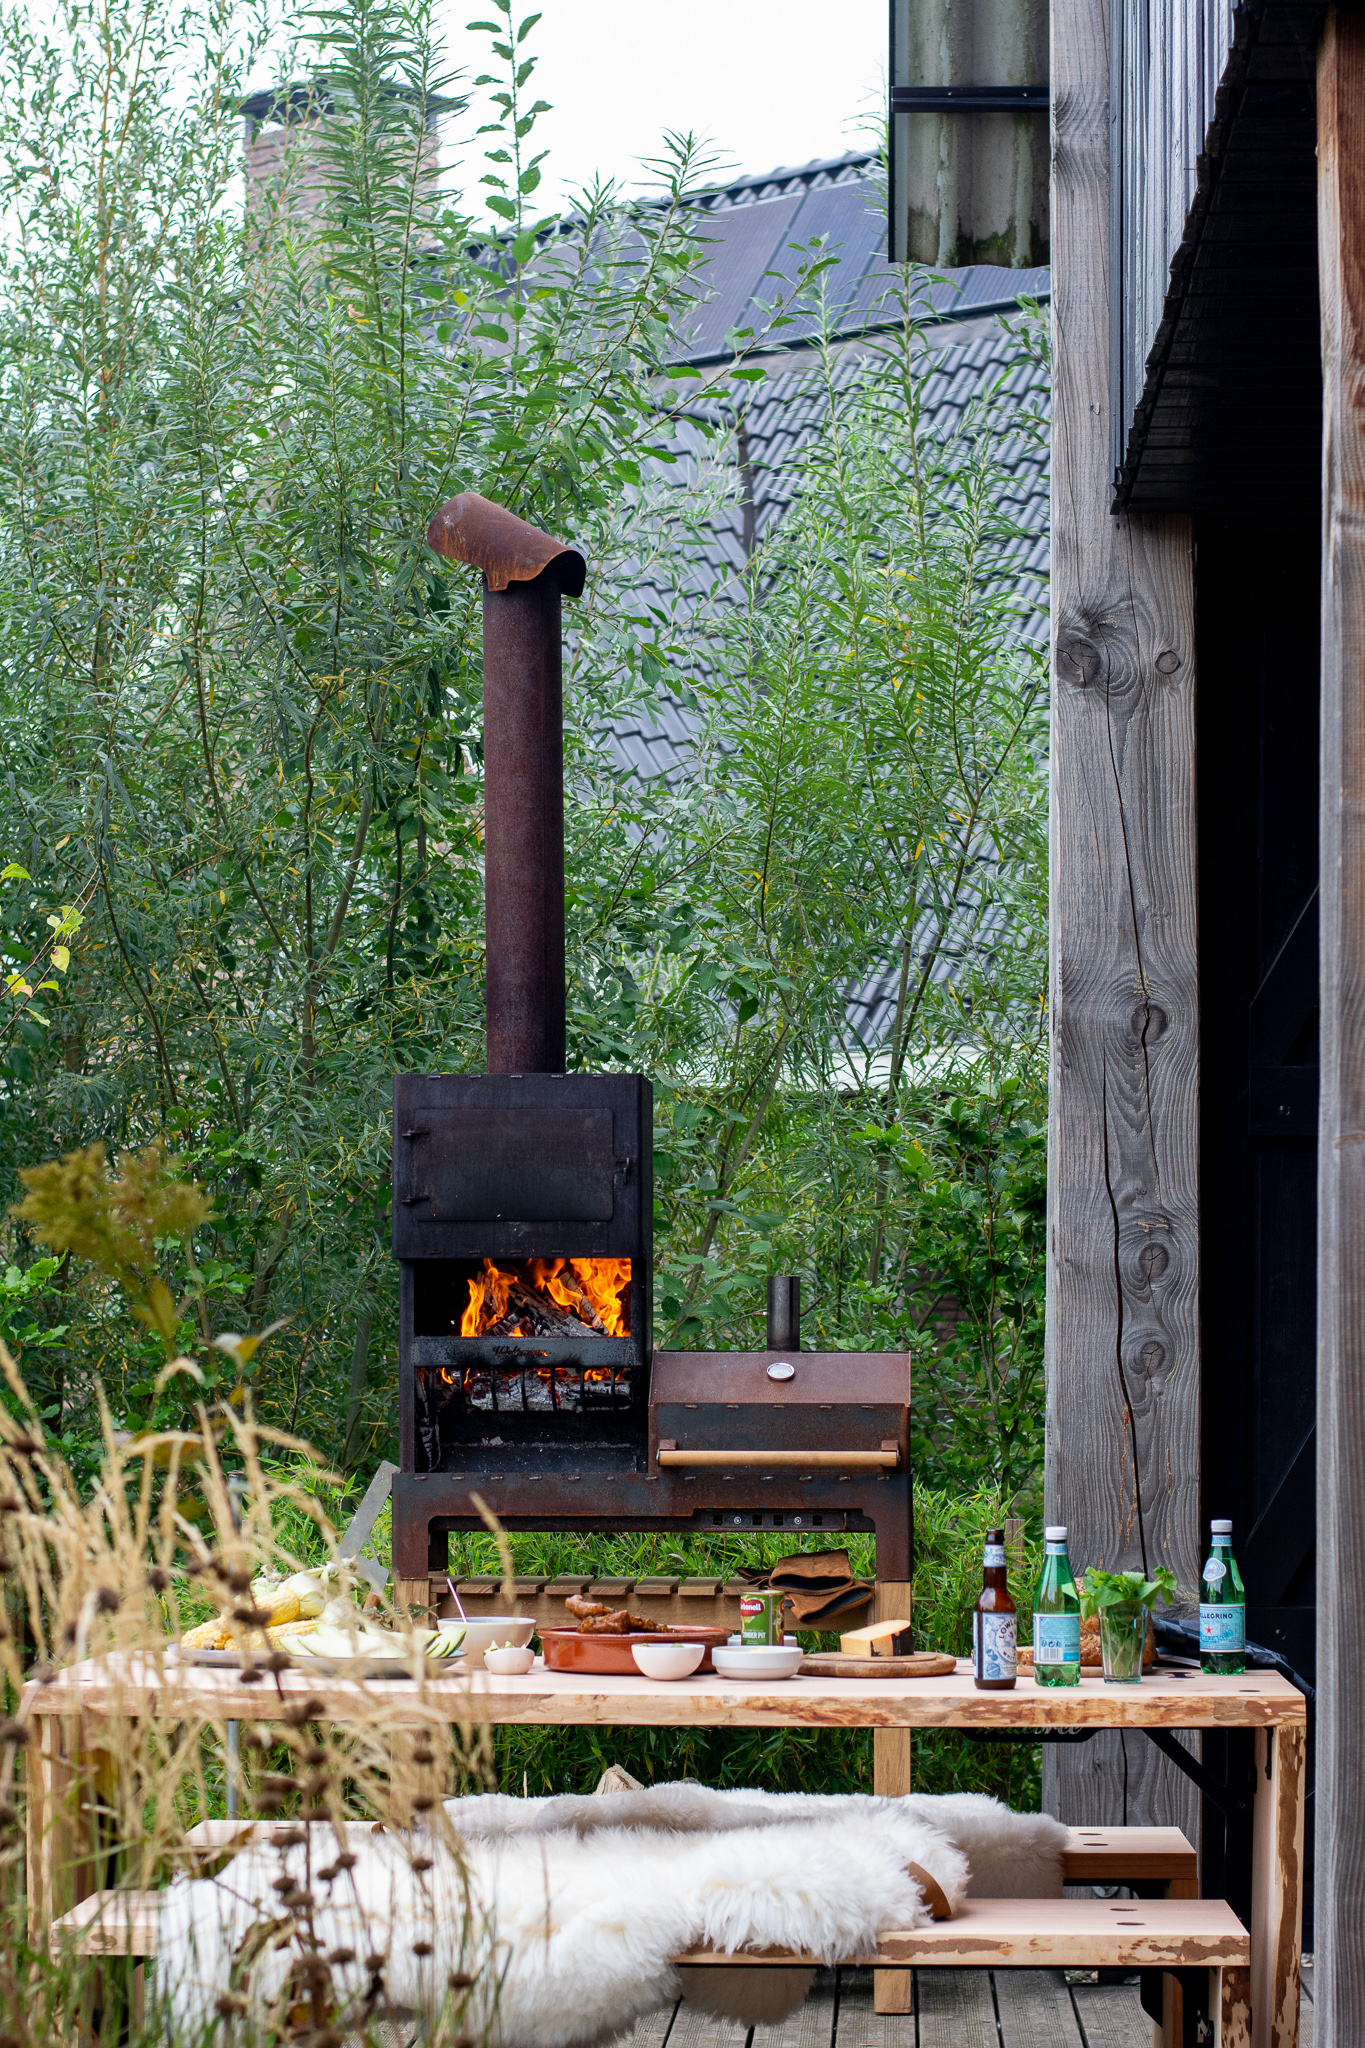 Outdooroven-xl-barbecue-pleasure